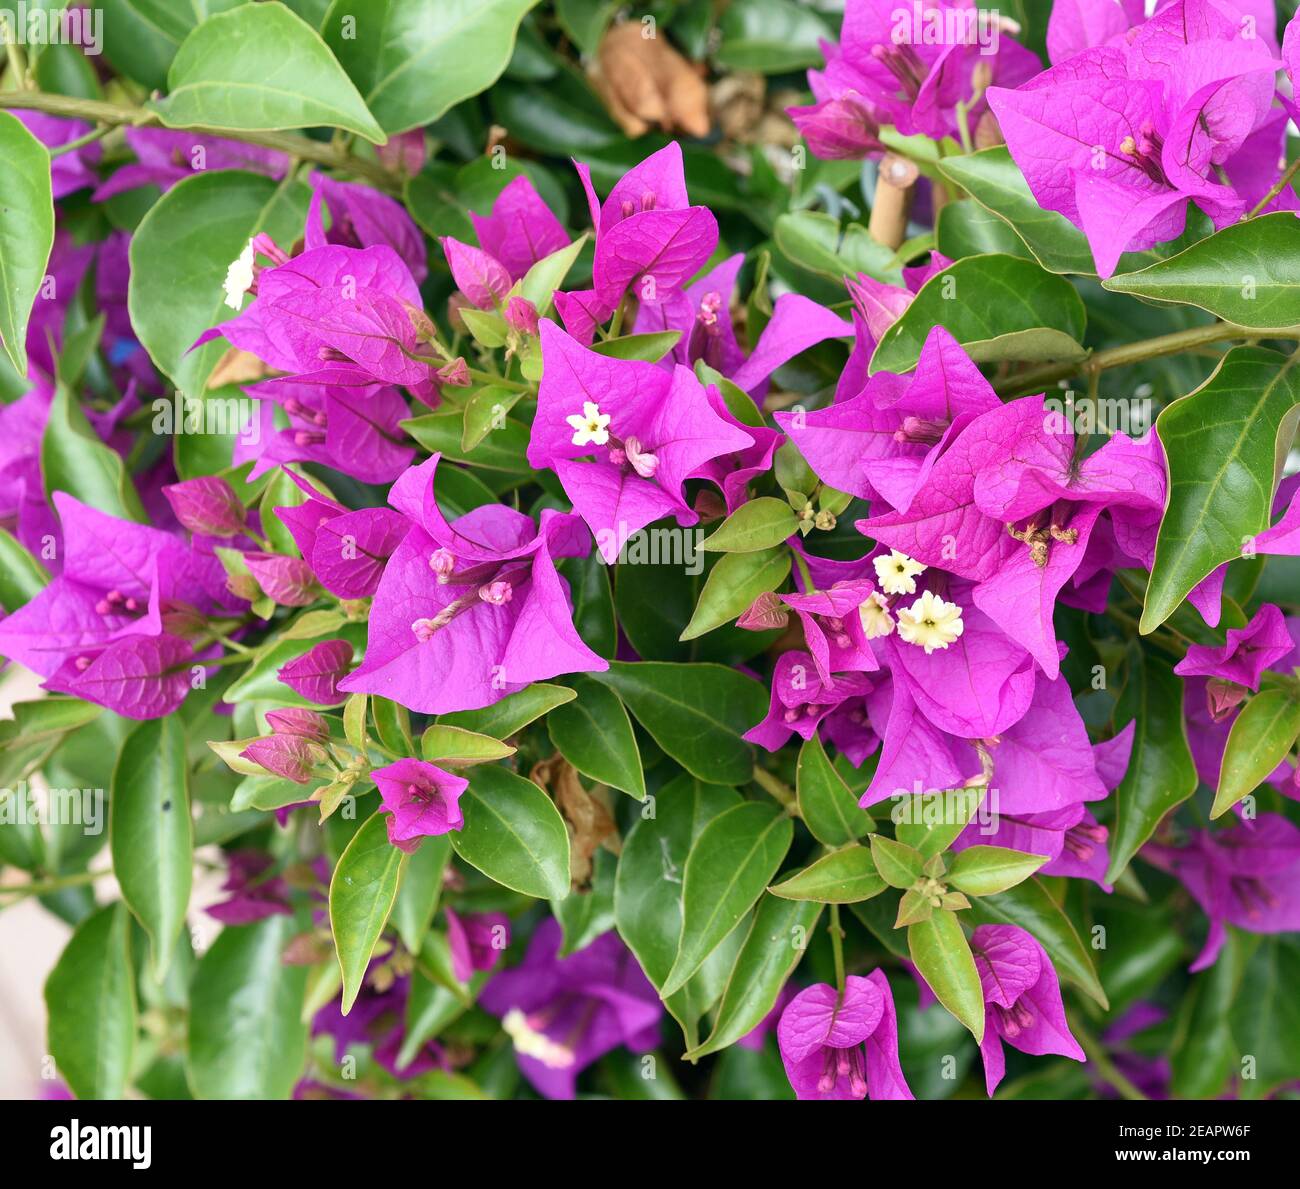 Bougainvillea, Glabra, Spectabilis, Drillingsblume, Kletterpflanze Stock Photo